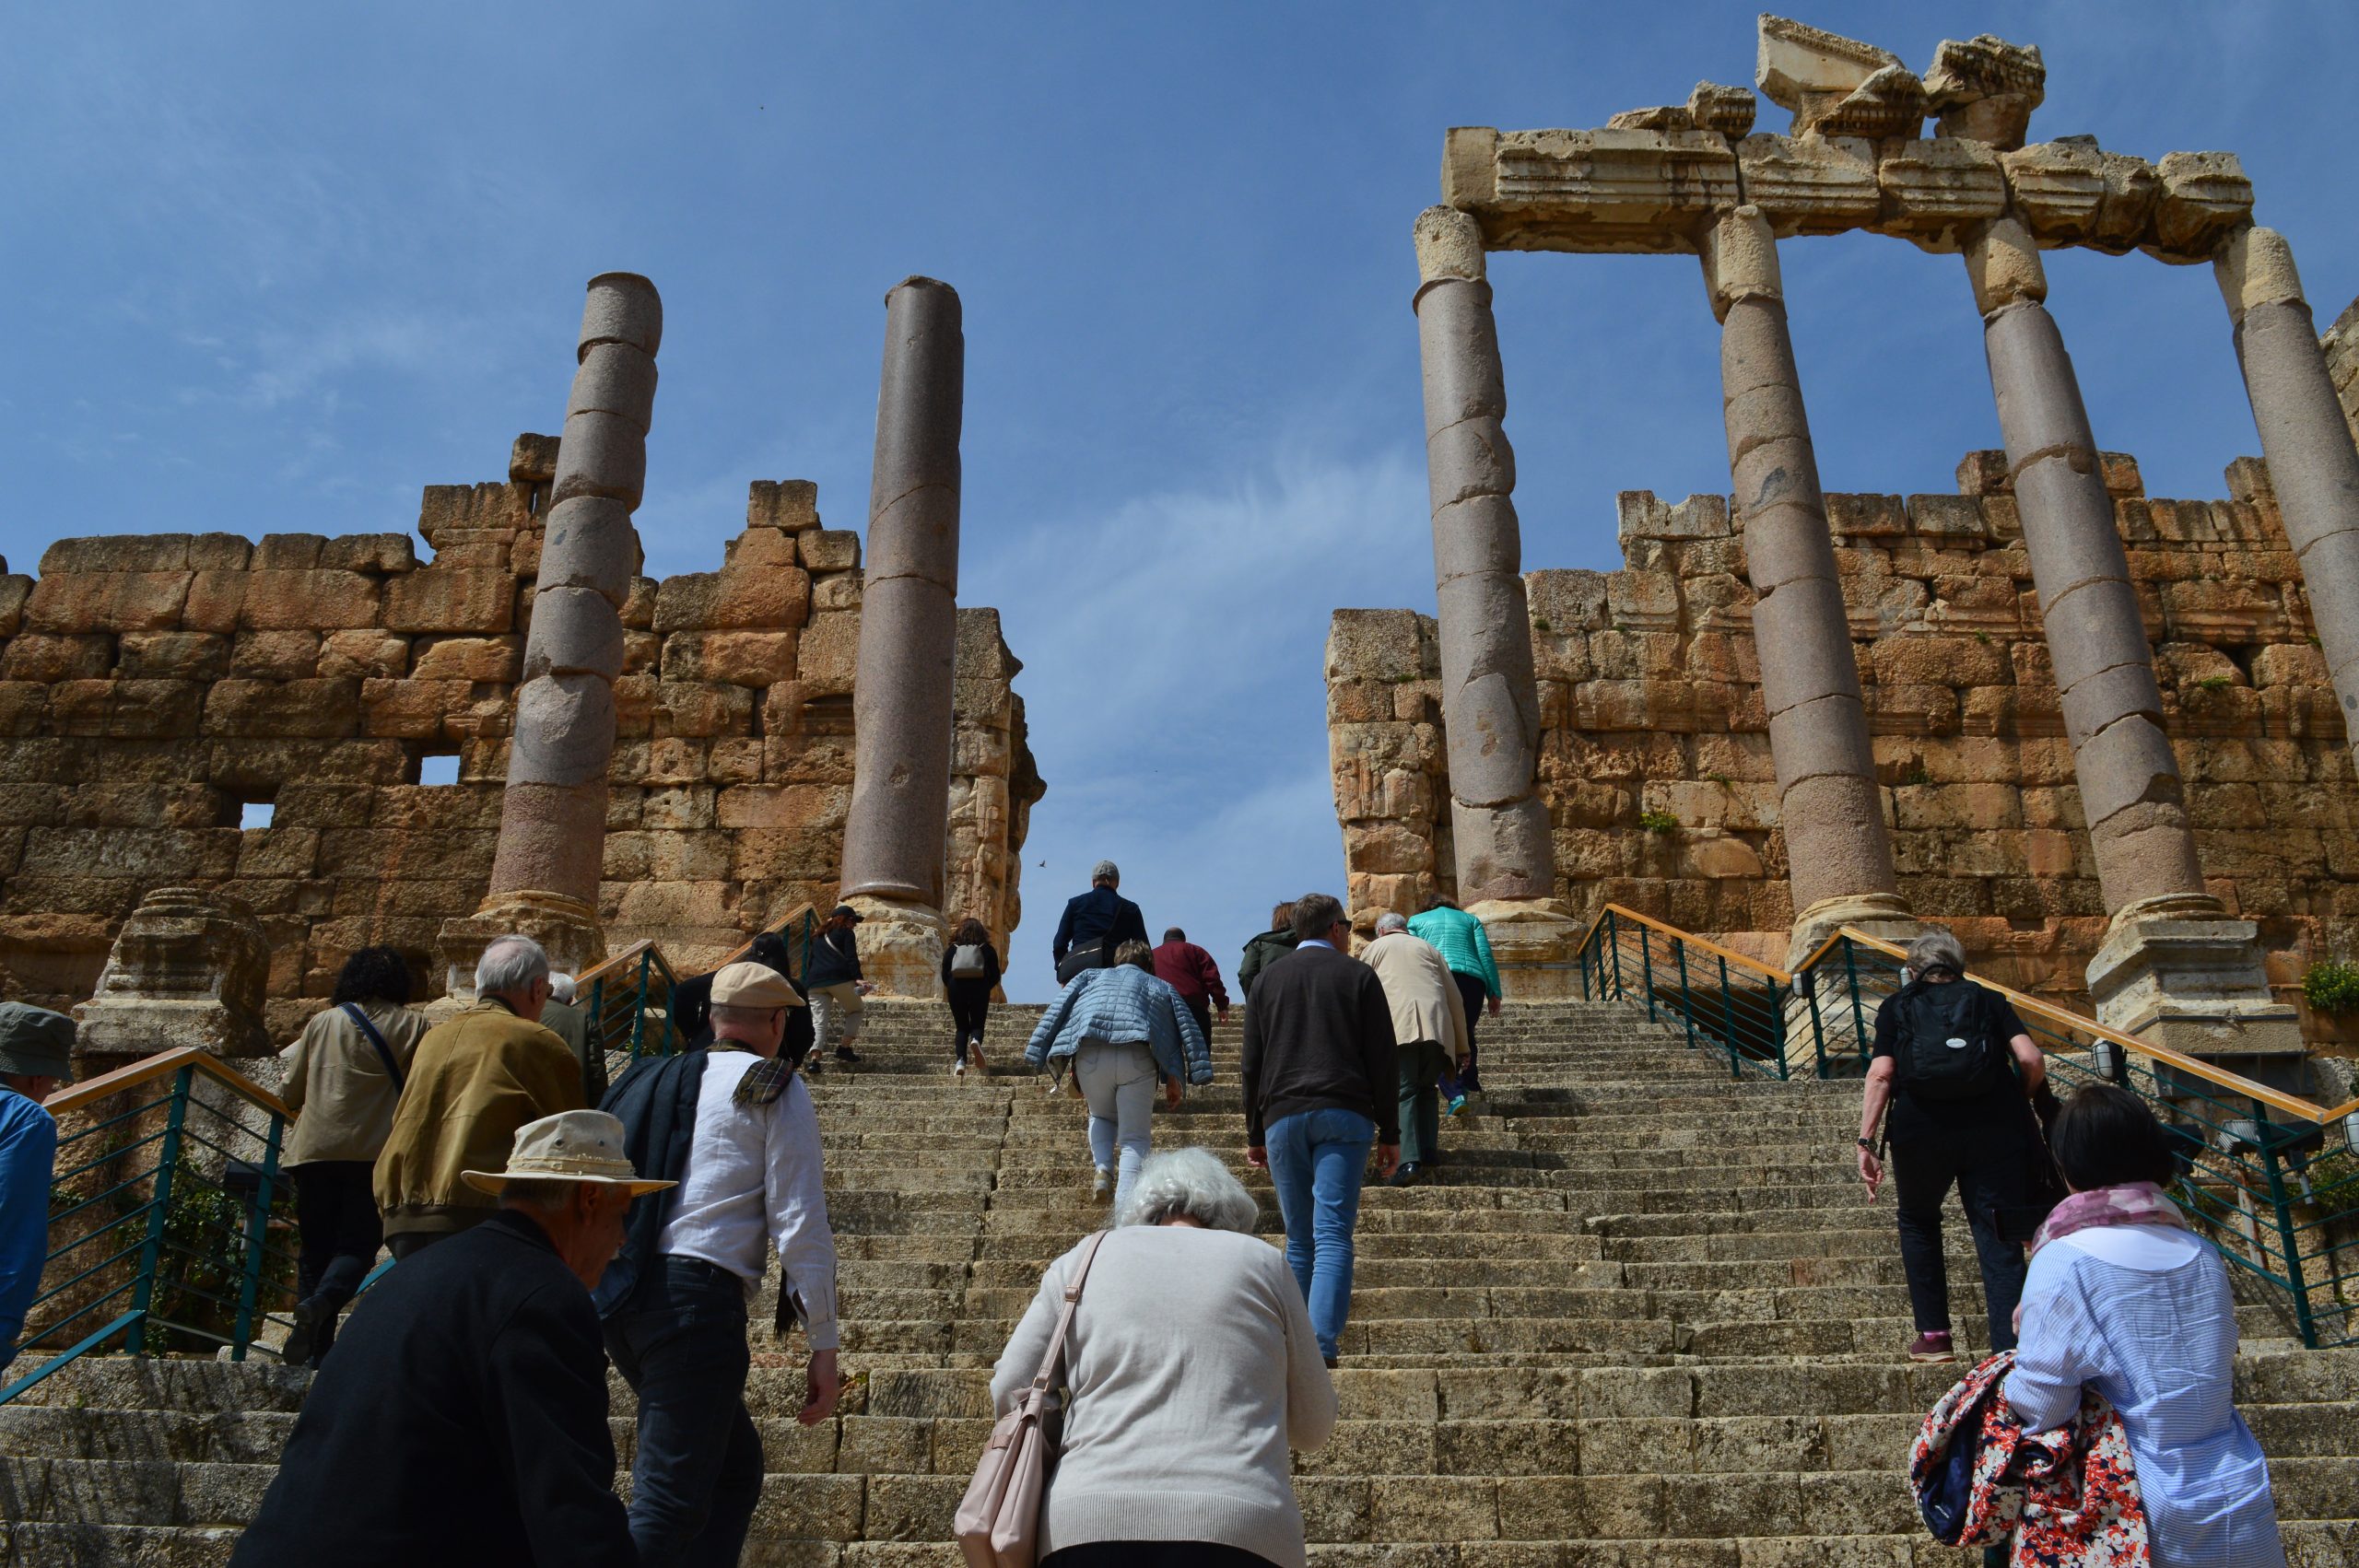 Kuvassa portaat, joiden päässä muinaisia pylväitä. Portaita kiipeää ryhmä ihmisiä.